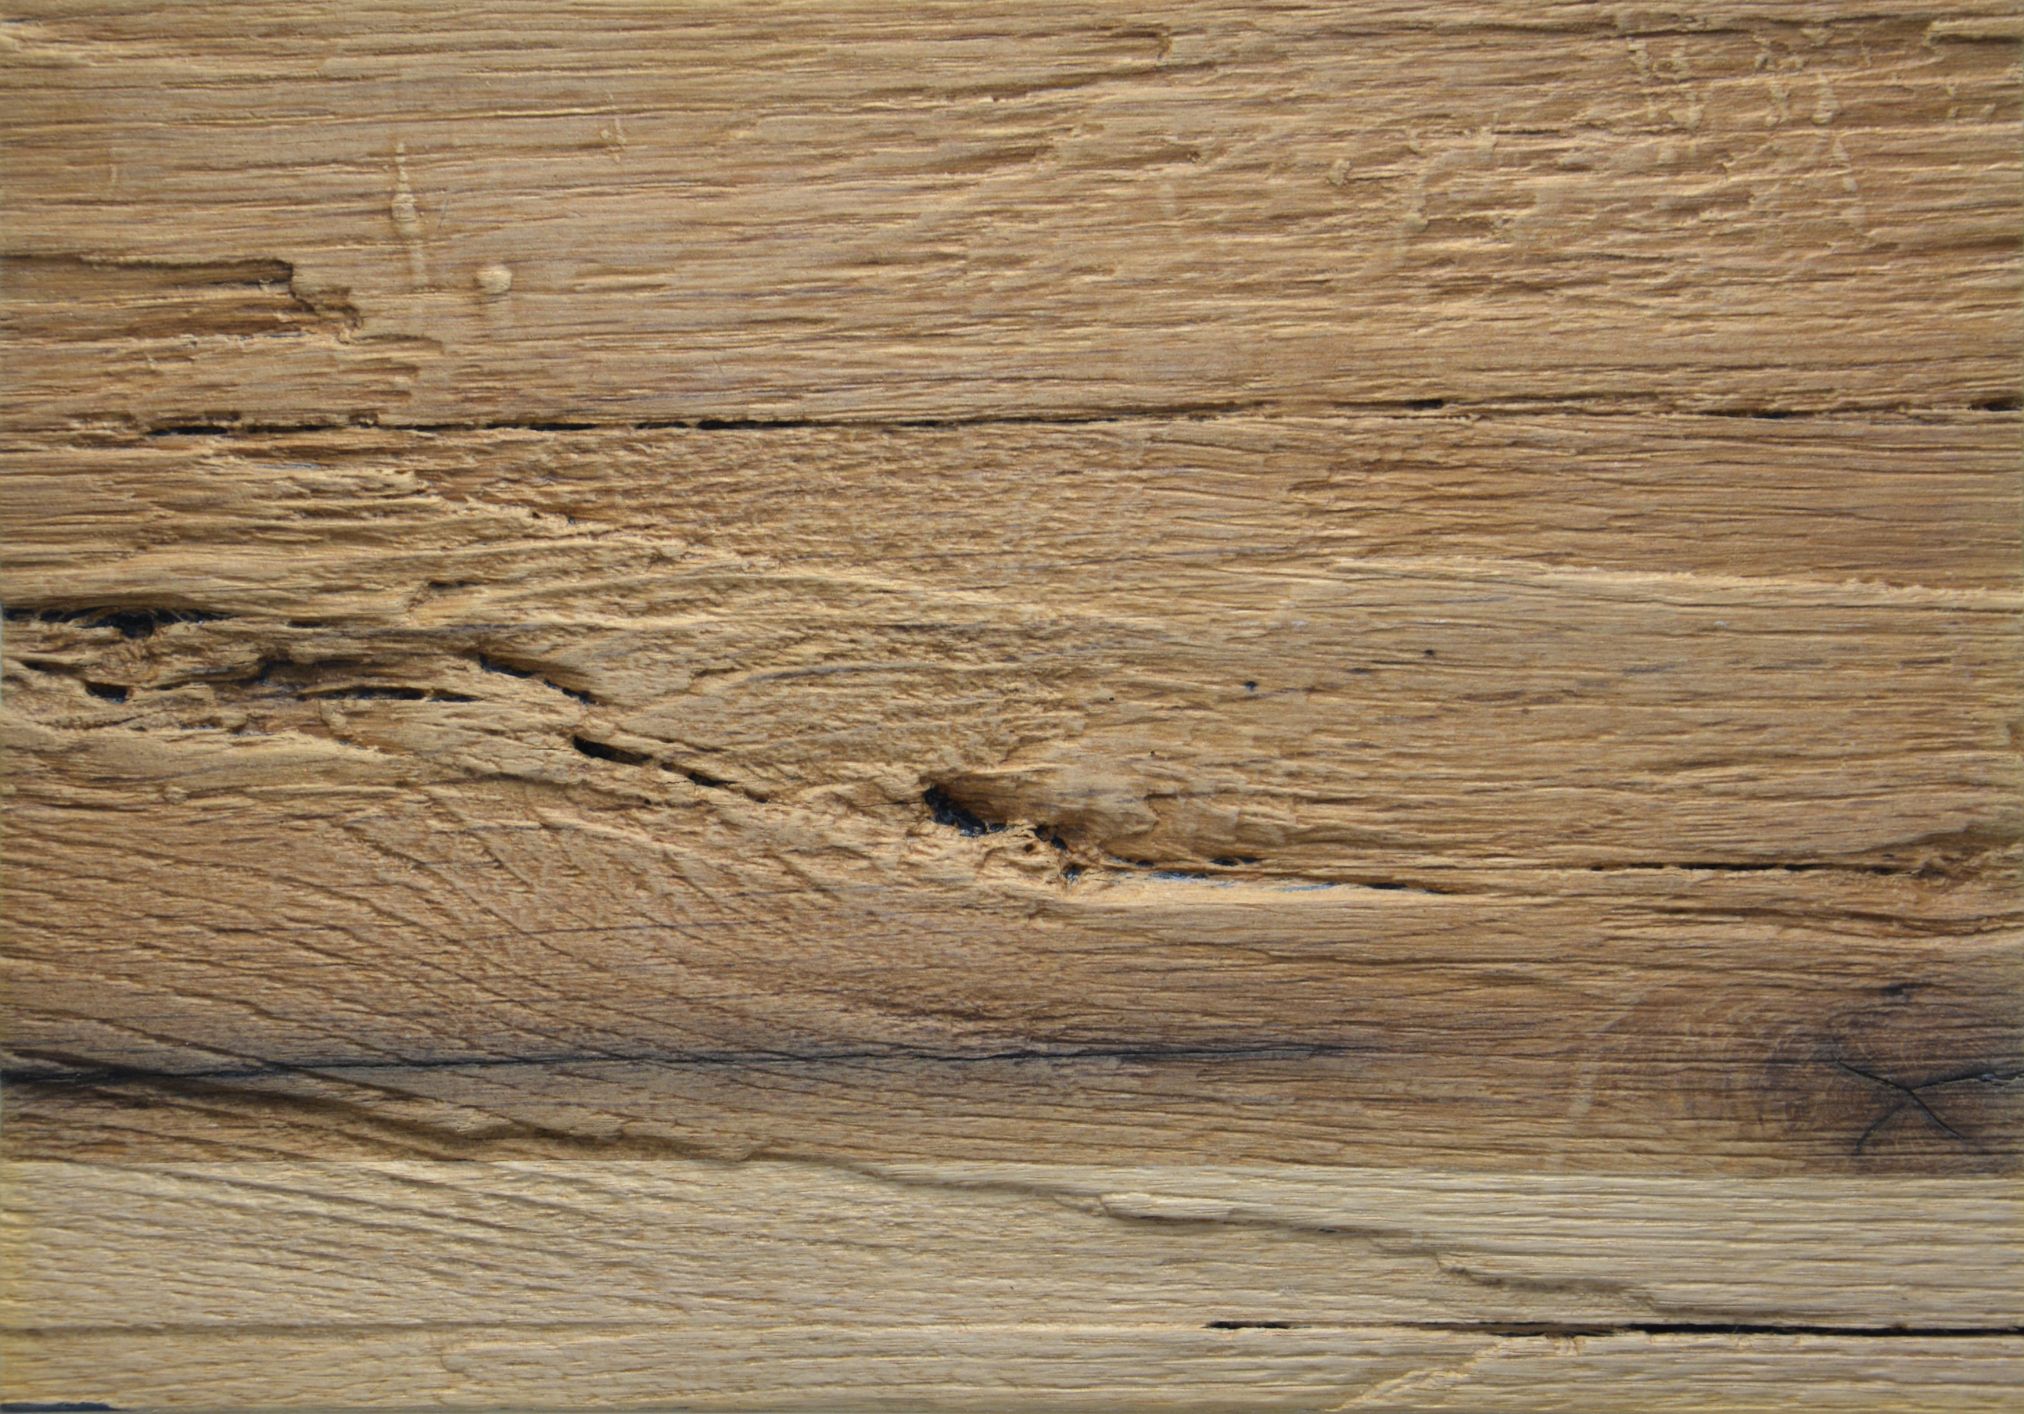 2652 - Rustic wood - Old Oak - Real wood veneer